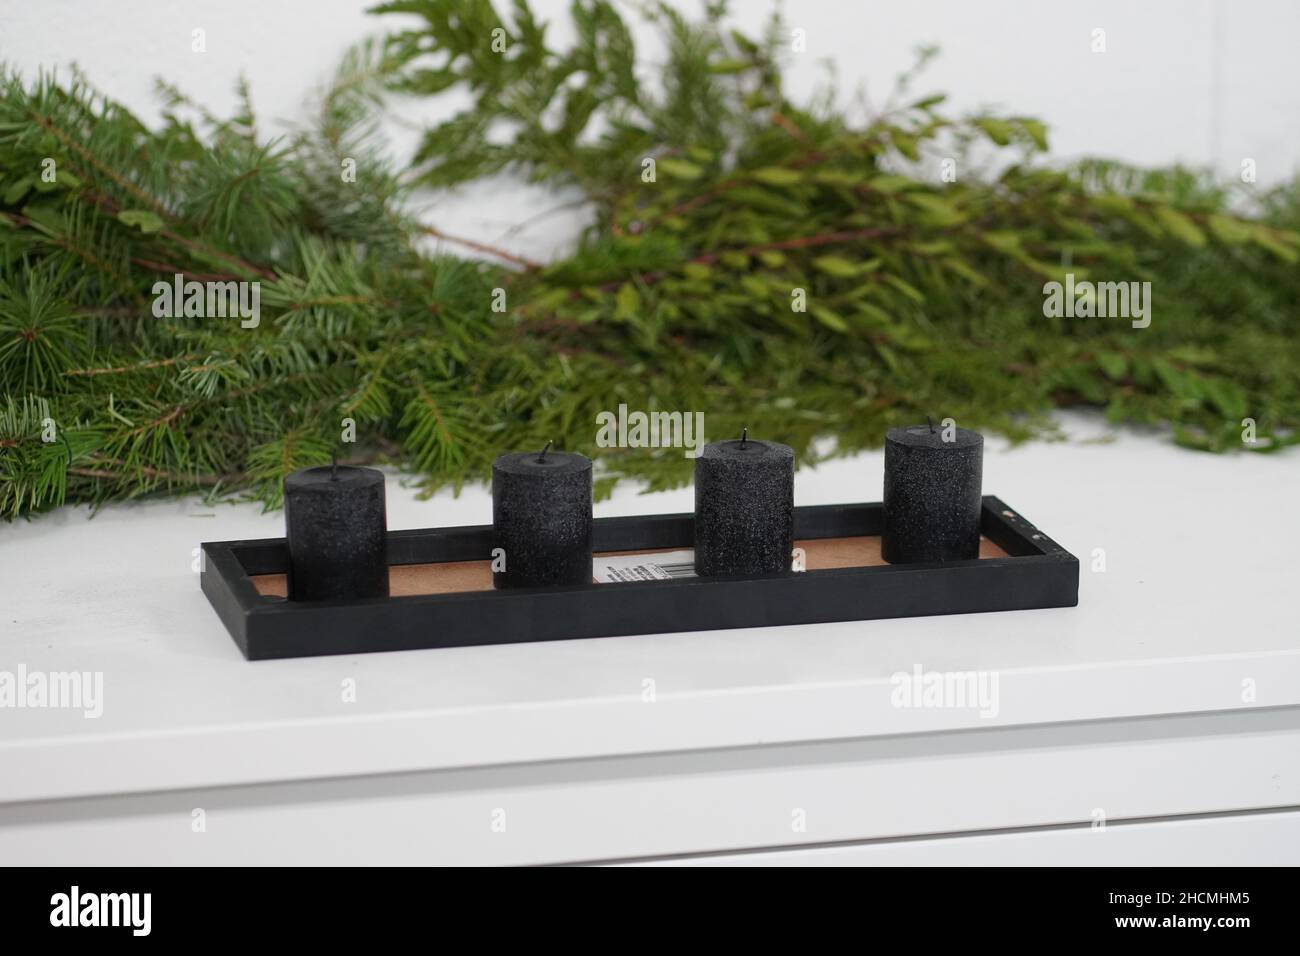 Ensemble de bougies noires avec branches d'arbre de Noël en arrière-plan Banque D'Images